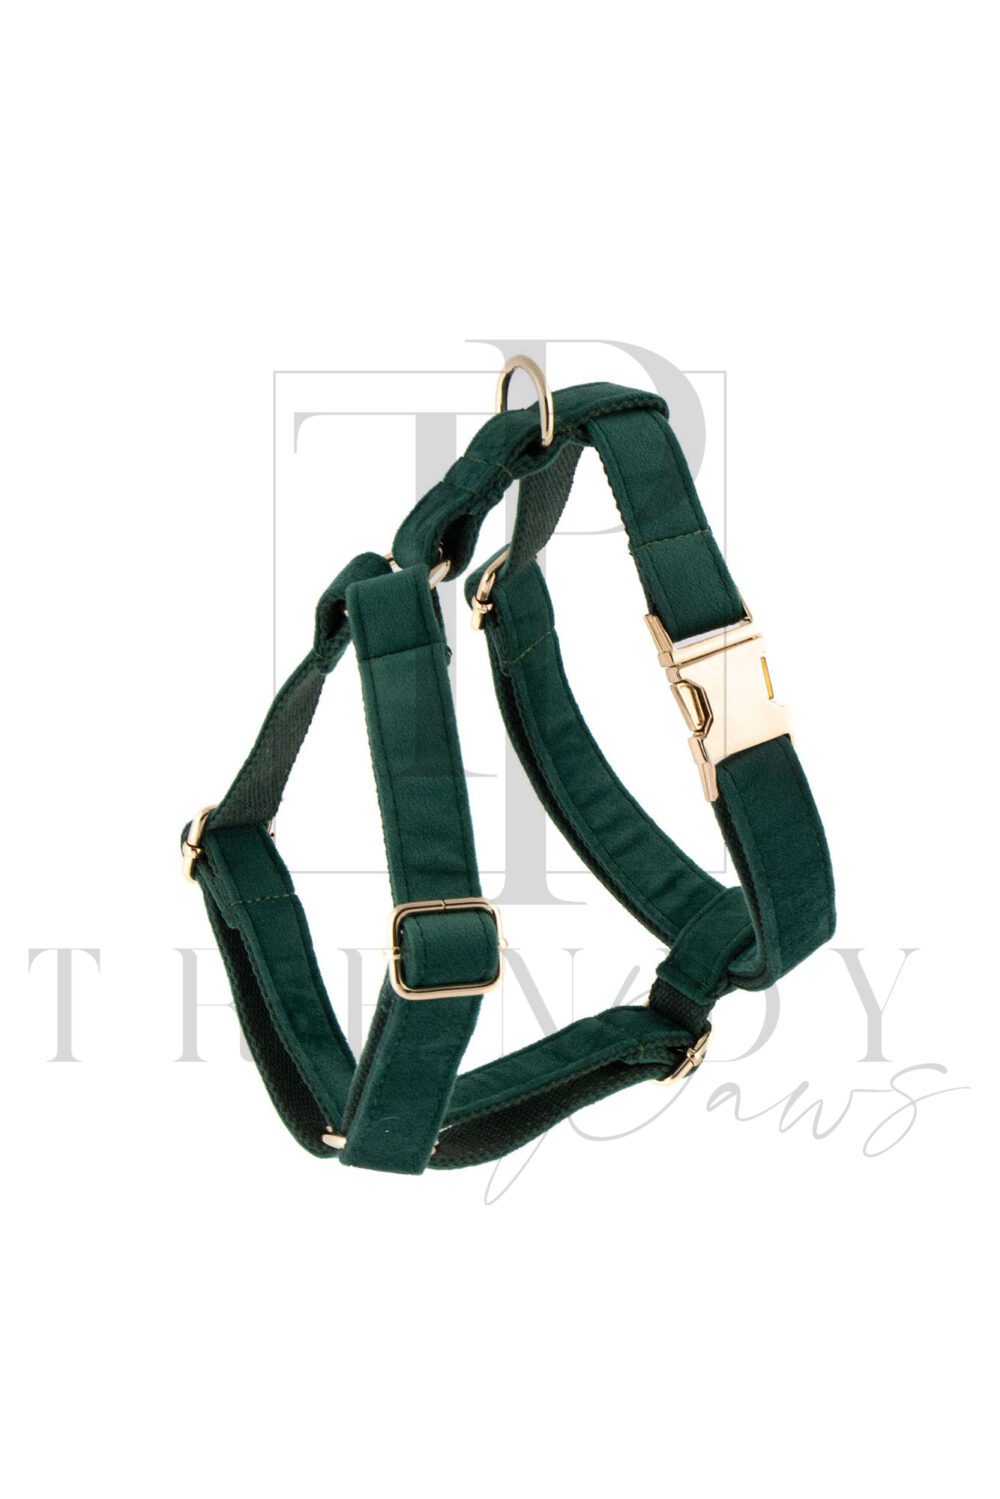 Green velvet soft dog harnesses harness